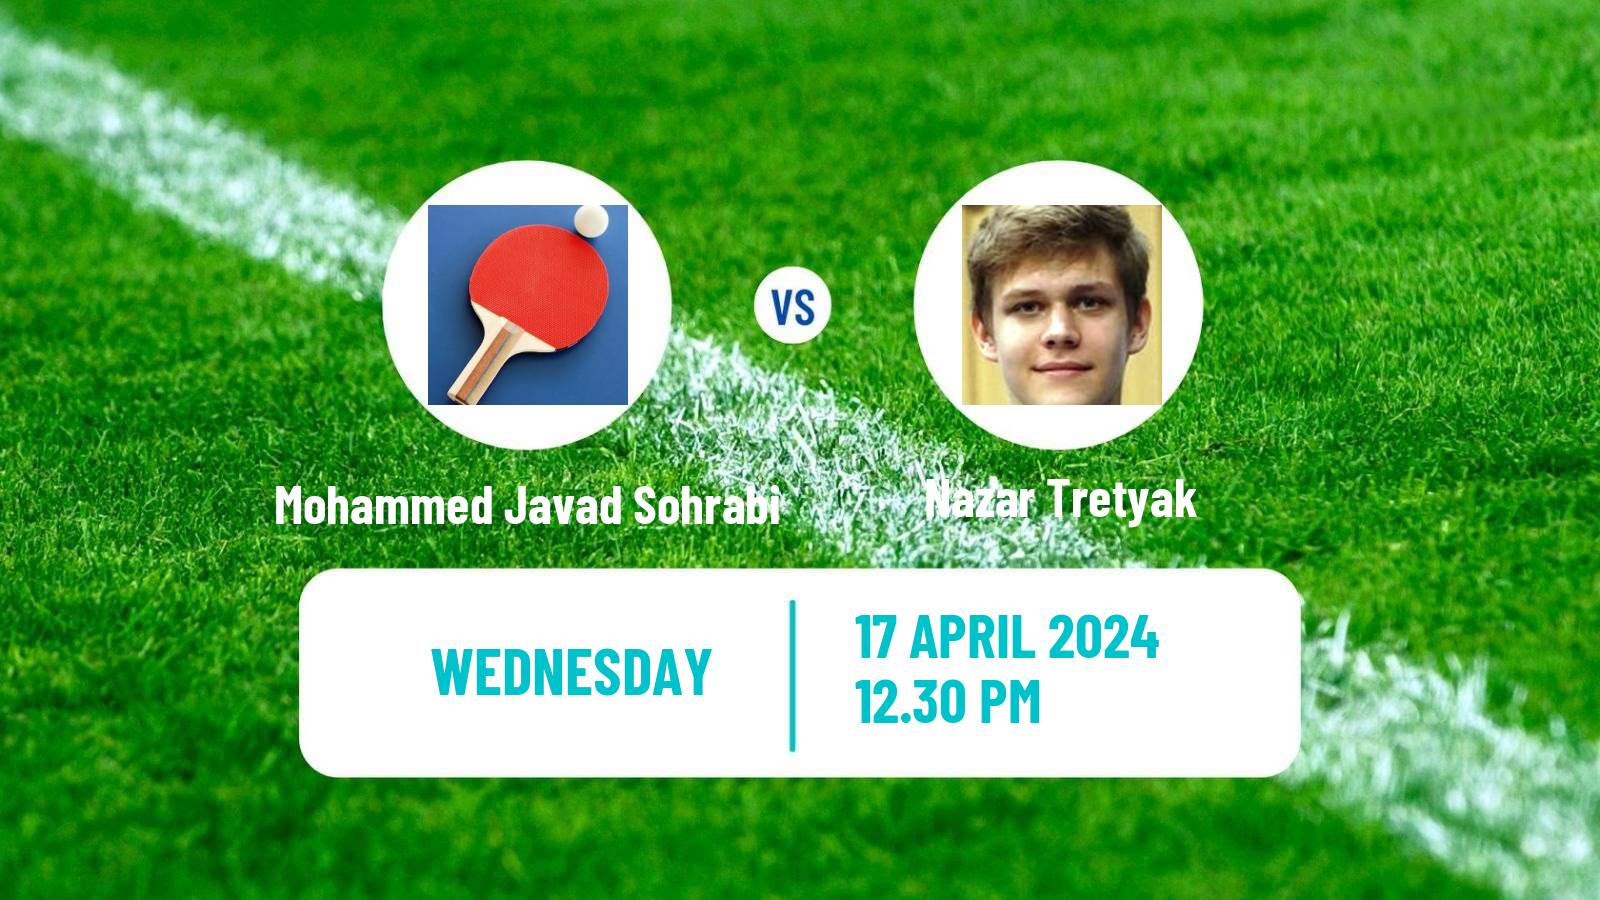 Table tennis Tt Star Series Men Mohammed Javad Sohrabi - Nazar Tretyak